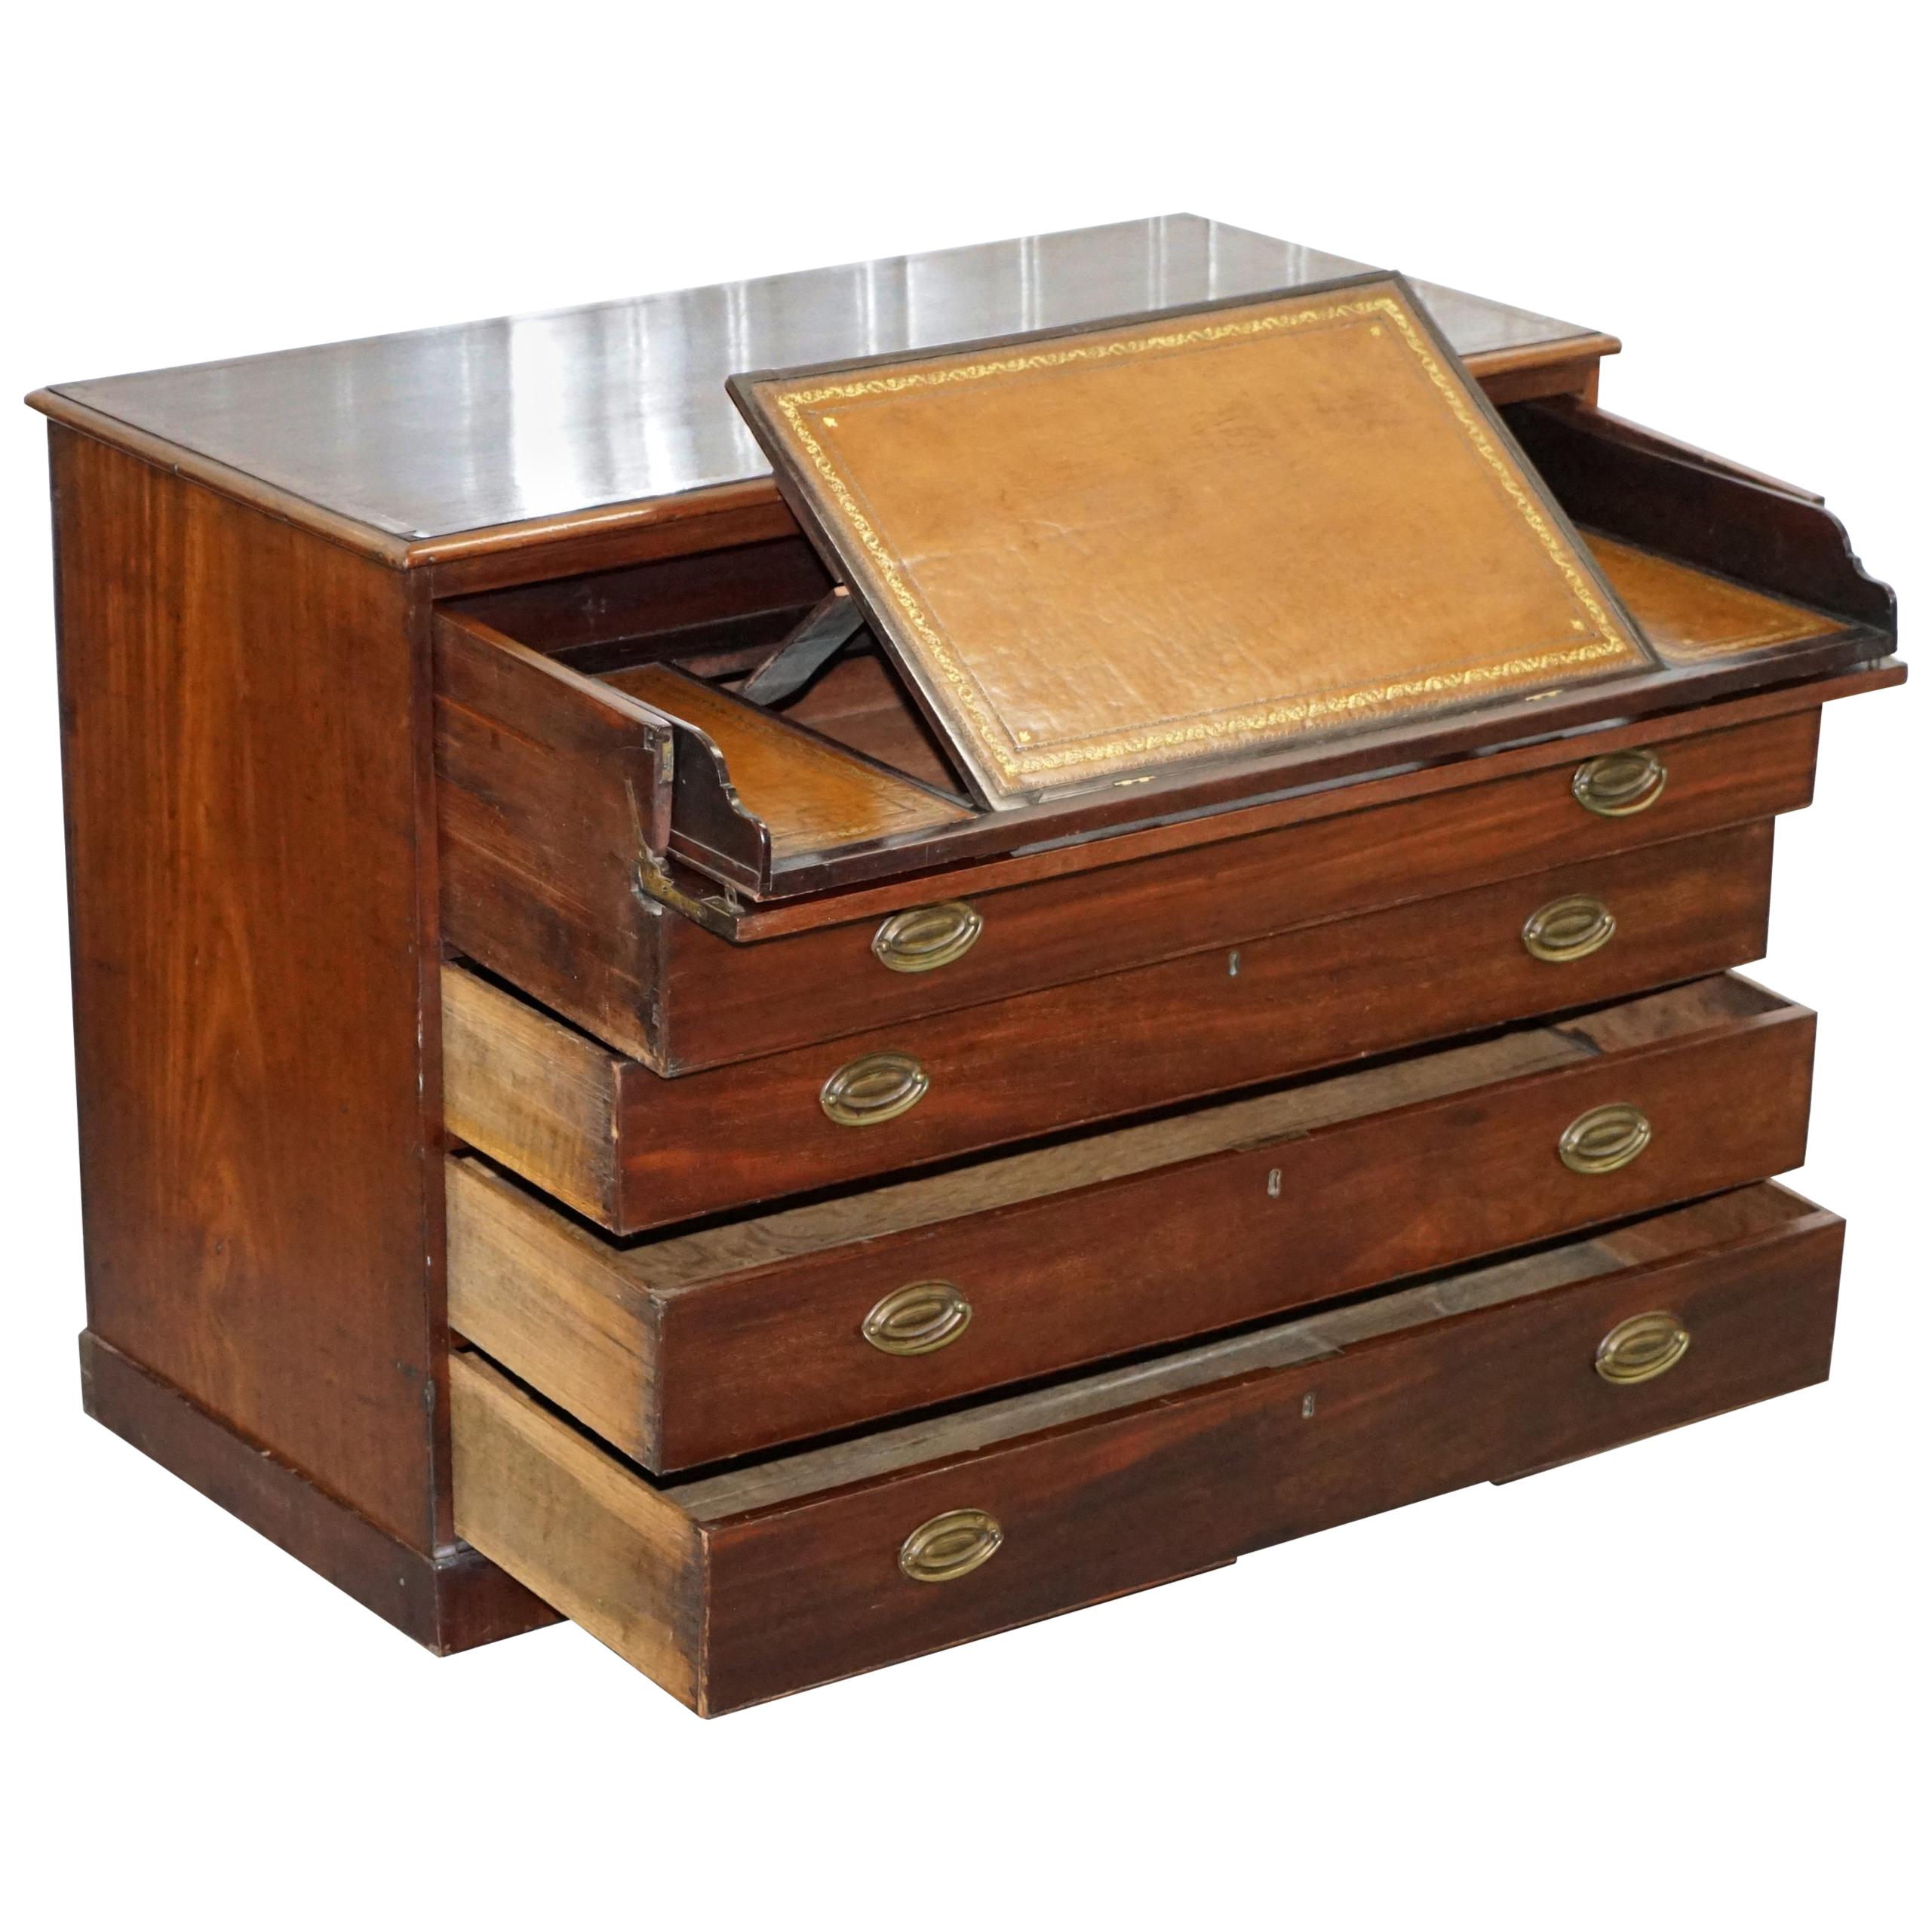 Bibliothèque à écrire en bois dur Robert Gillows II de 1790  Commode à tiroirs peinte en cuir